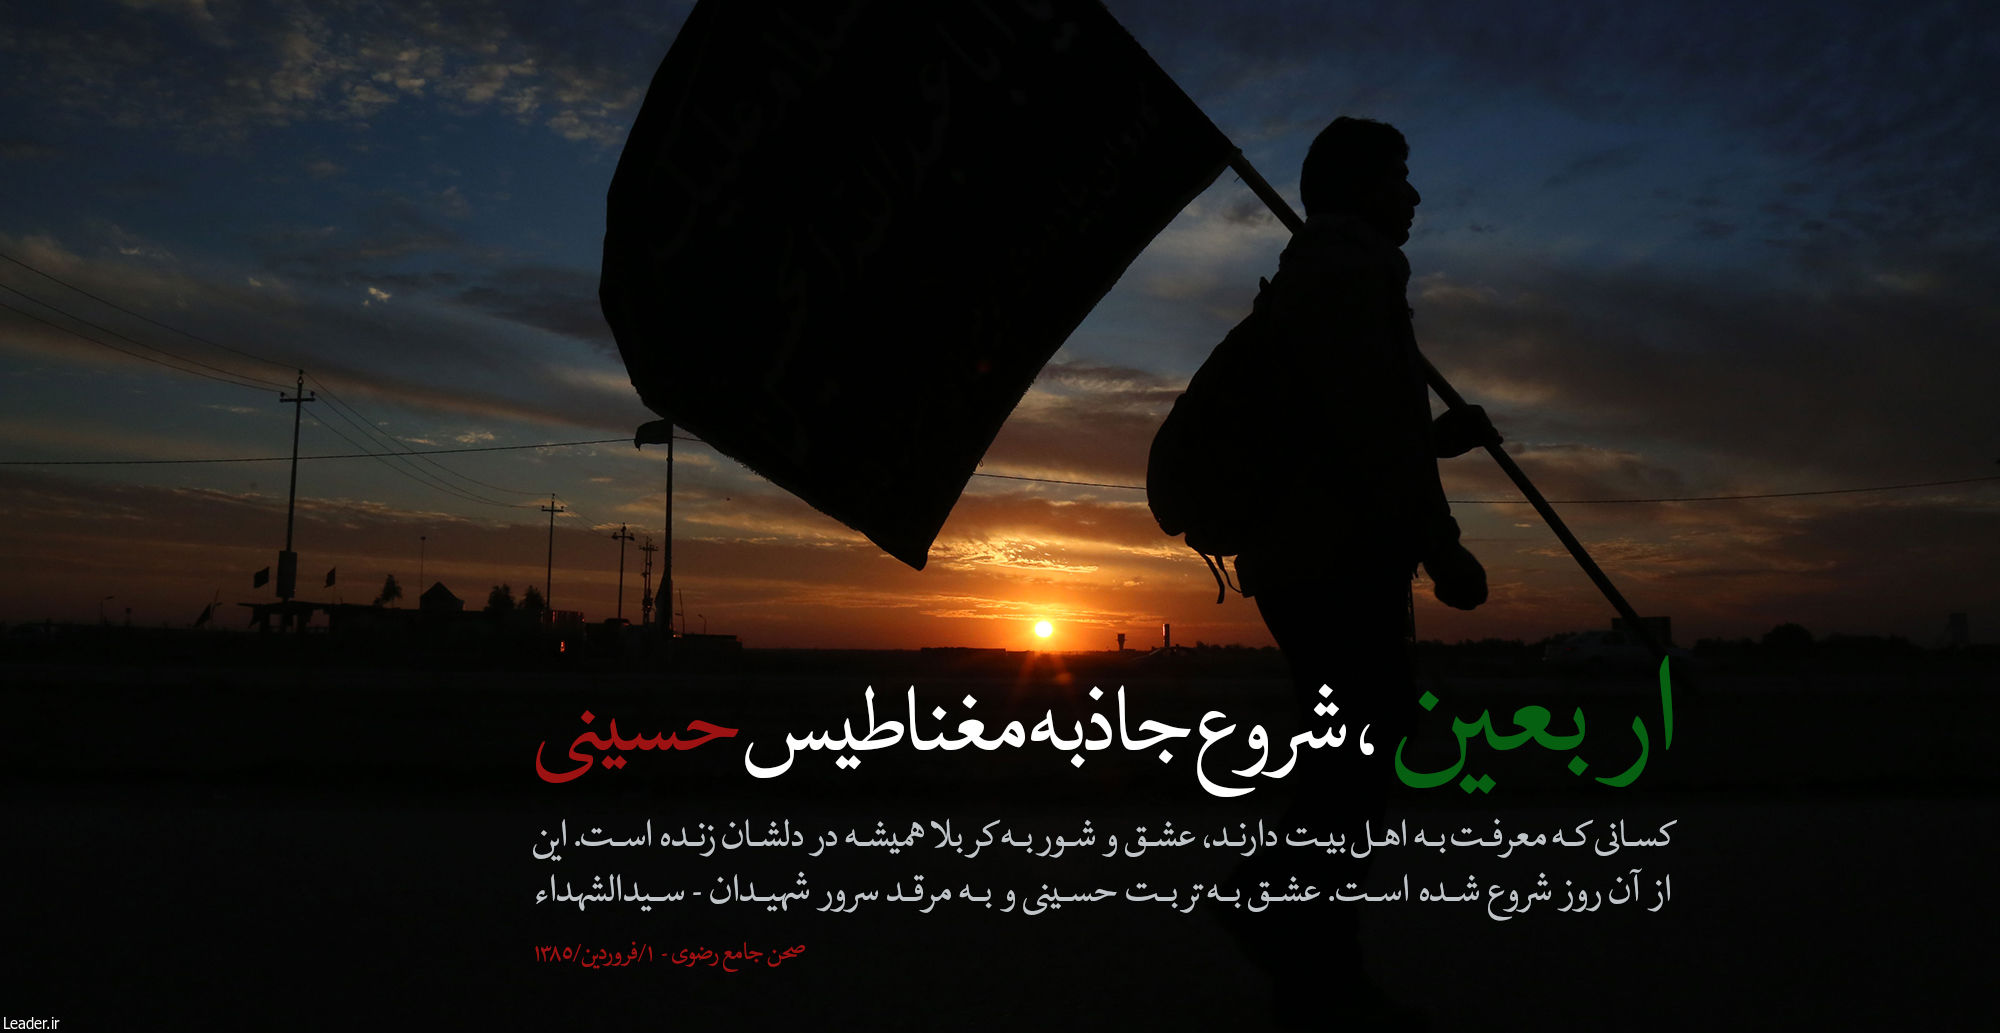 پوستر بیانات مقام معظم رهبری: جاذبه ى مغناطیس حسینى (+ متن)